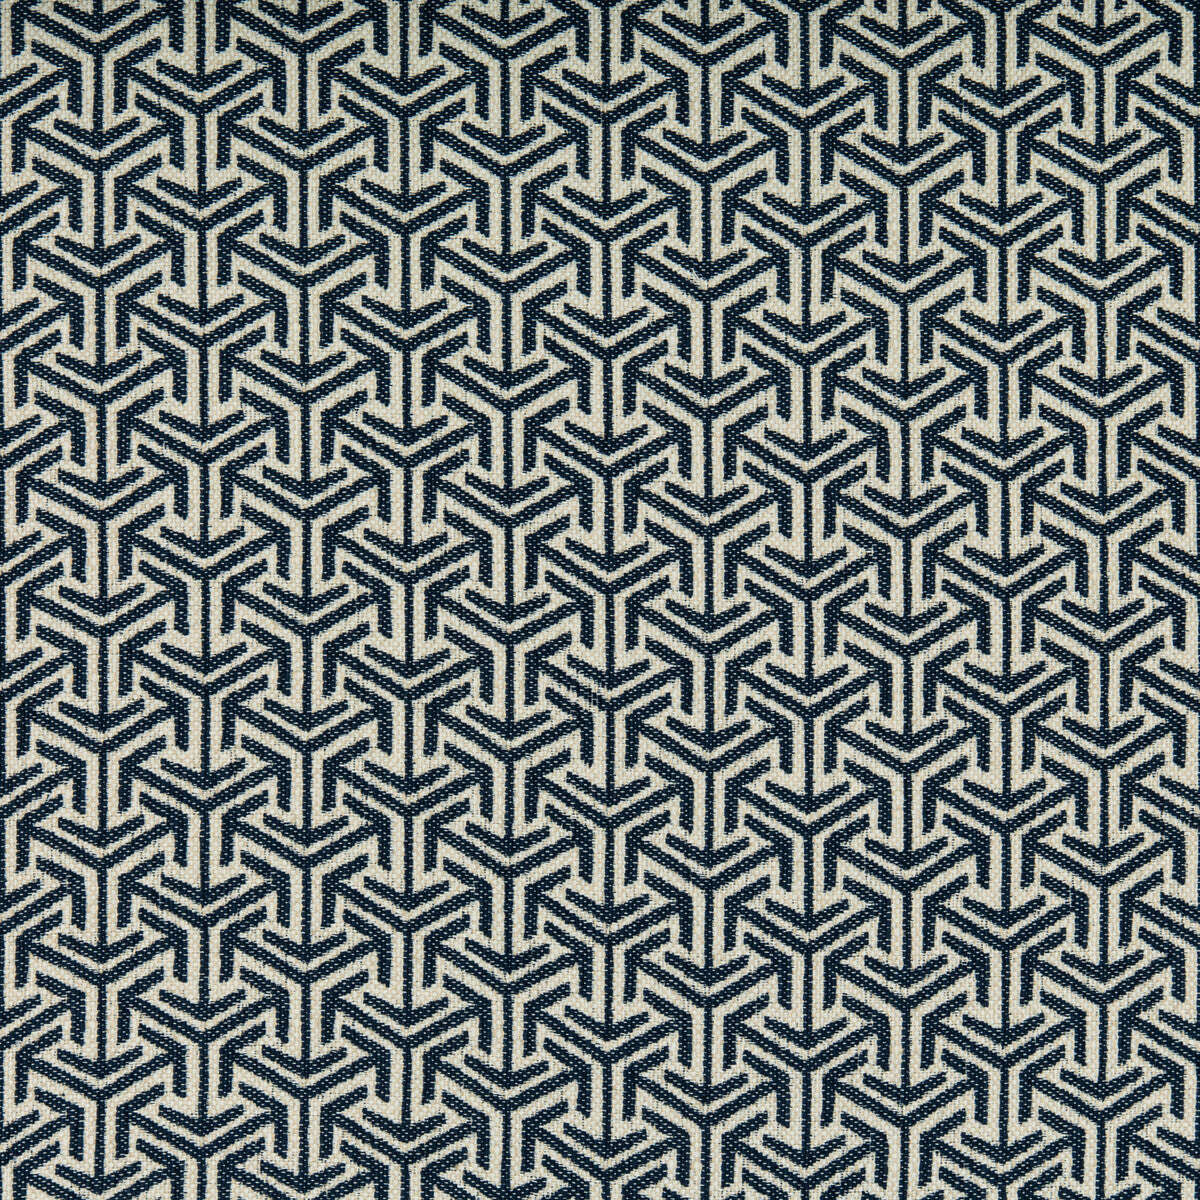 Kravet Design fabric in 35715-50 color - pattern 35715.50.0 - by Kravet Design